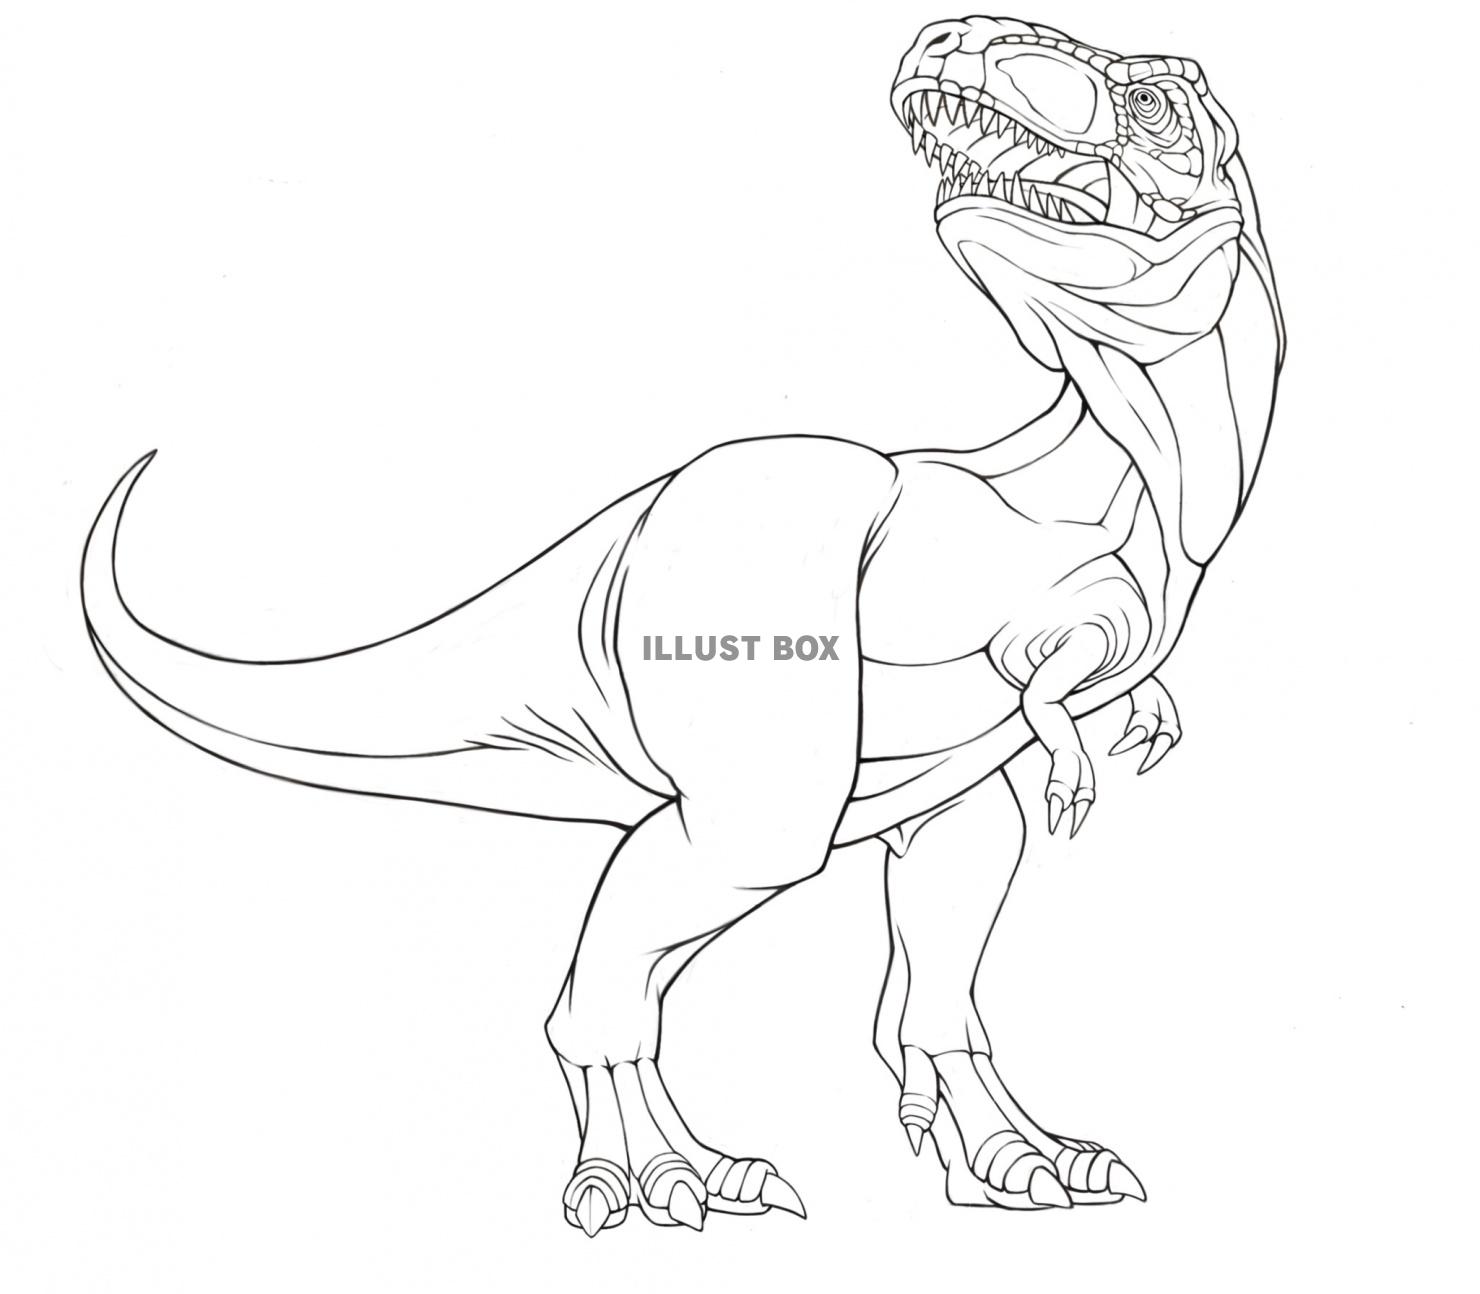 無料イラスト ティラノサウルス 線画 塗り絵素材